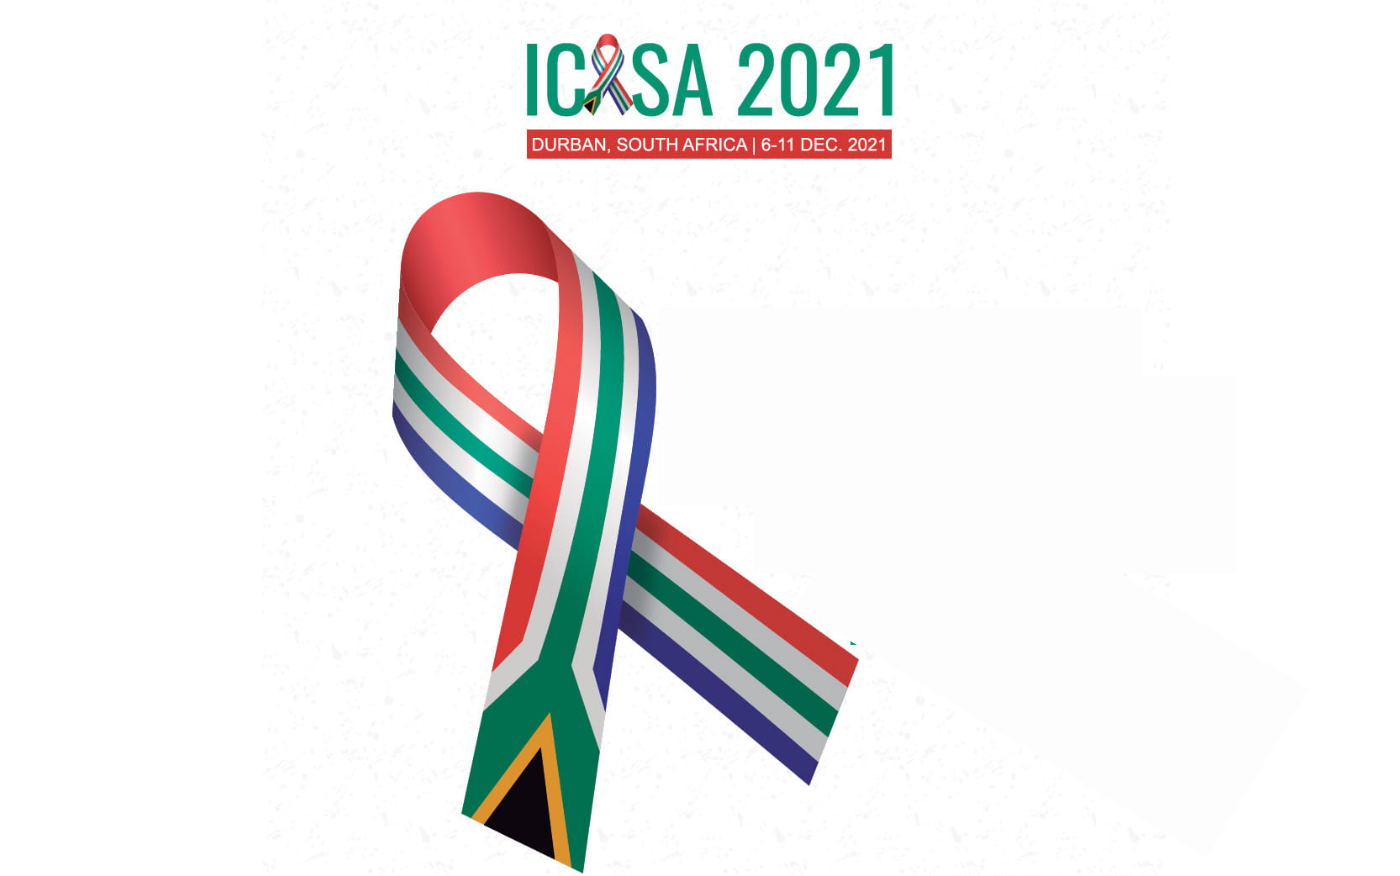 ITPC at ICASA 2021